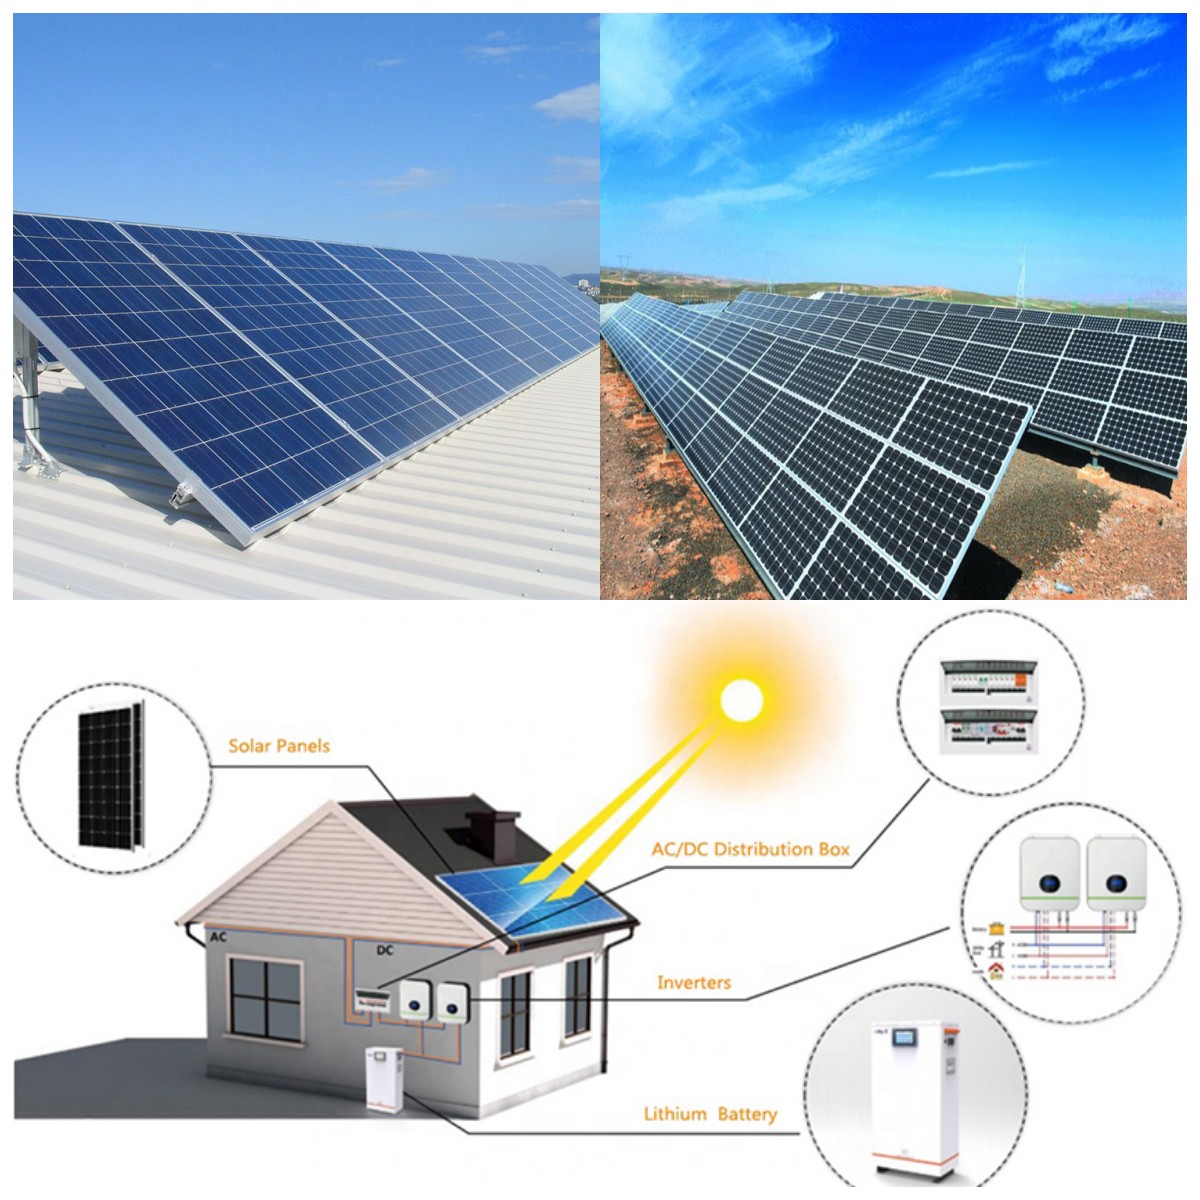 Quants panells solars es necessiten per fer funcionar una casa